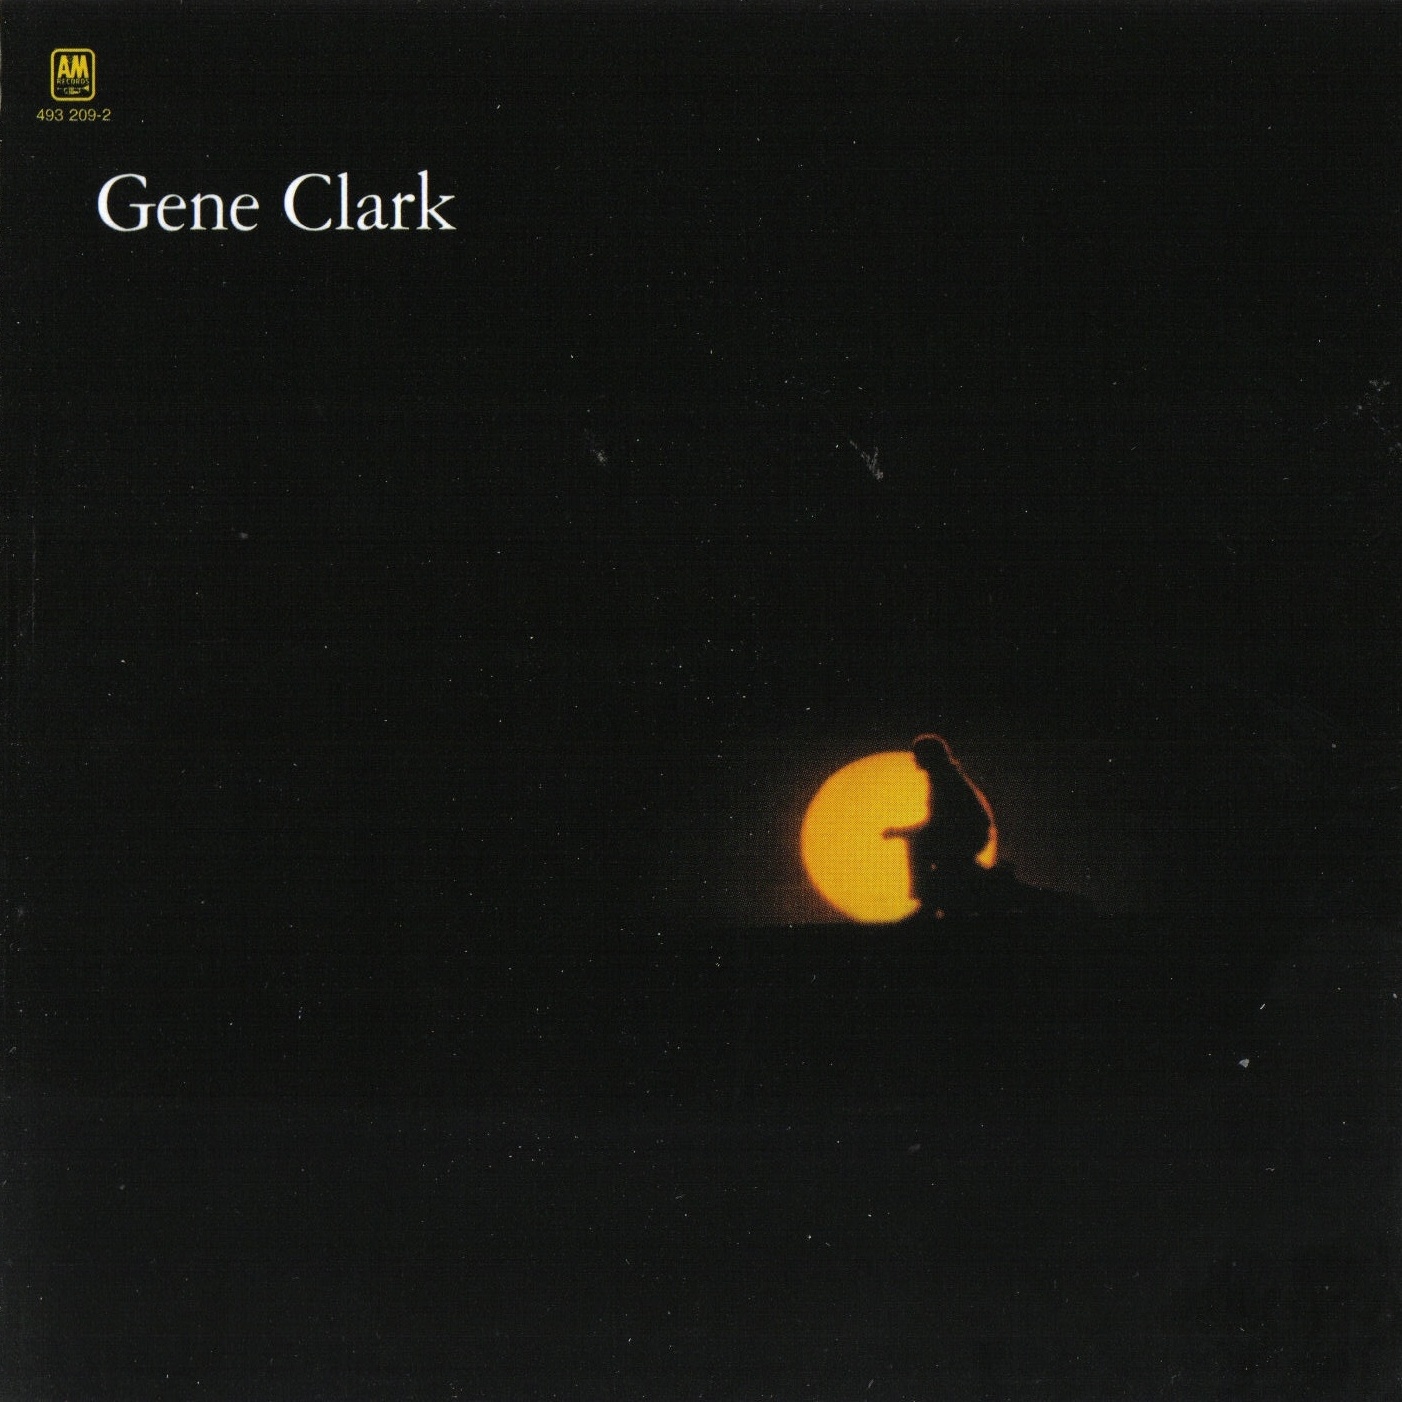 Gene Clark aka White Light